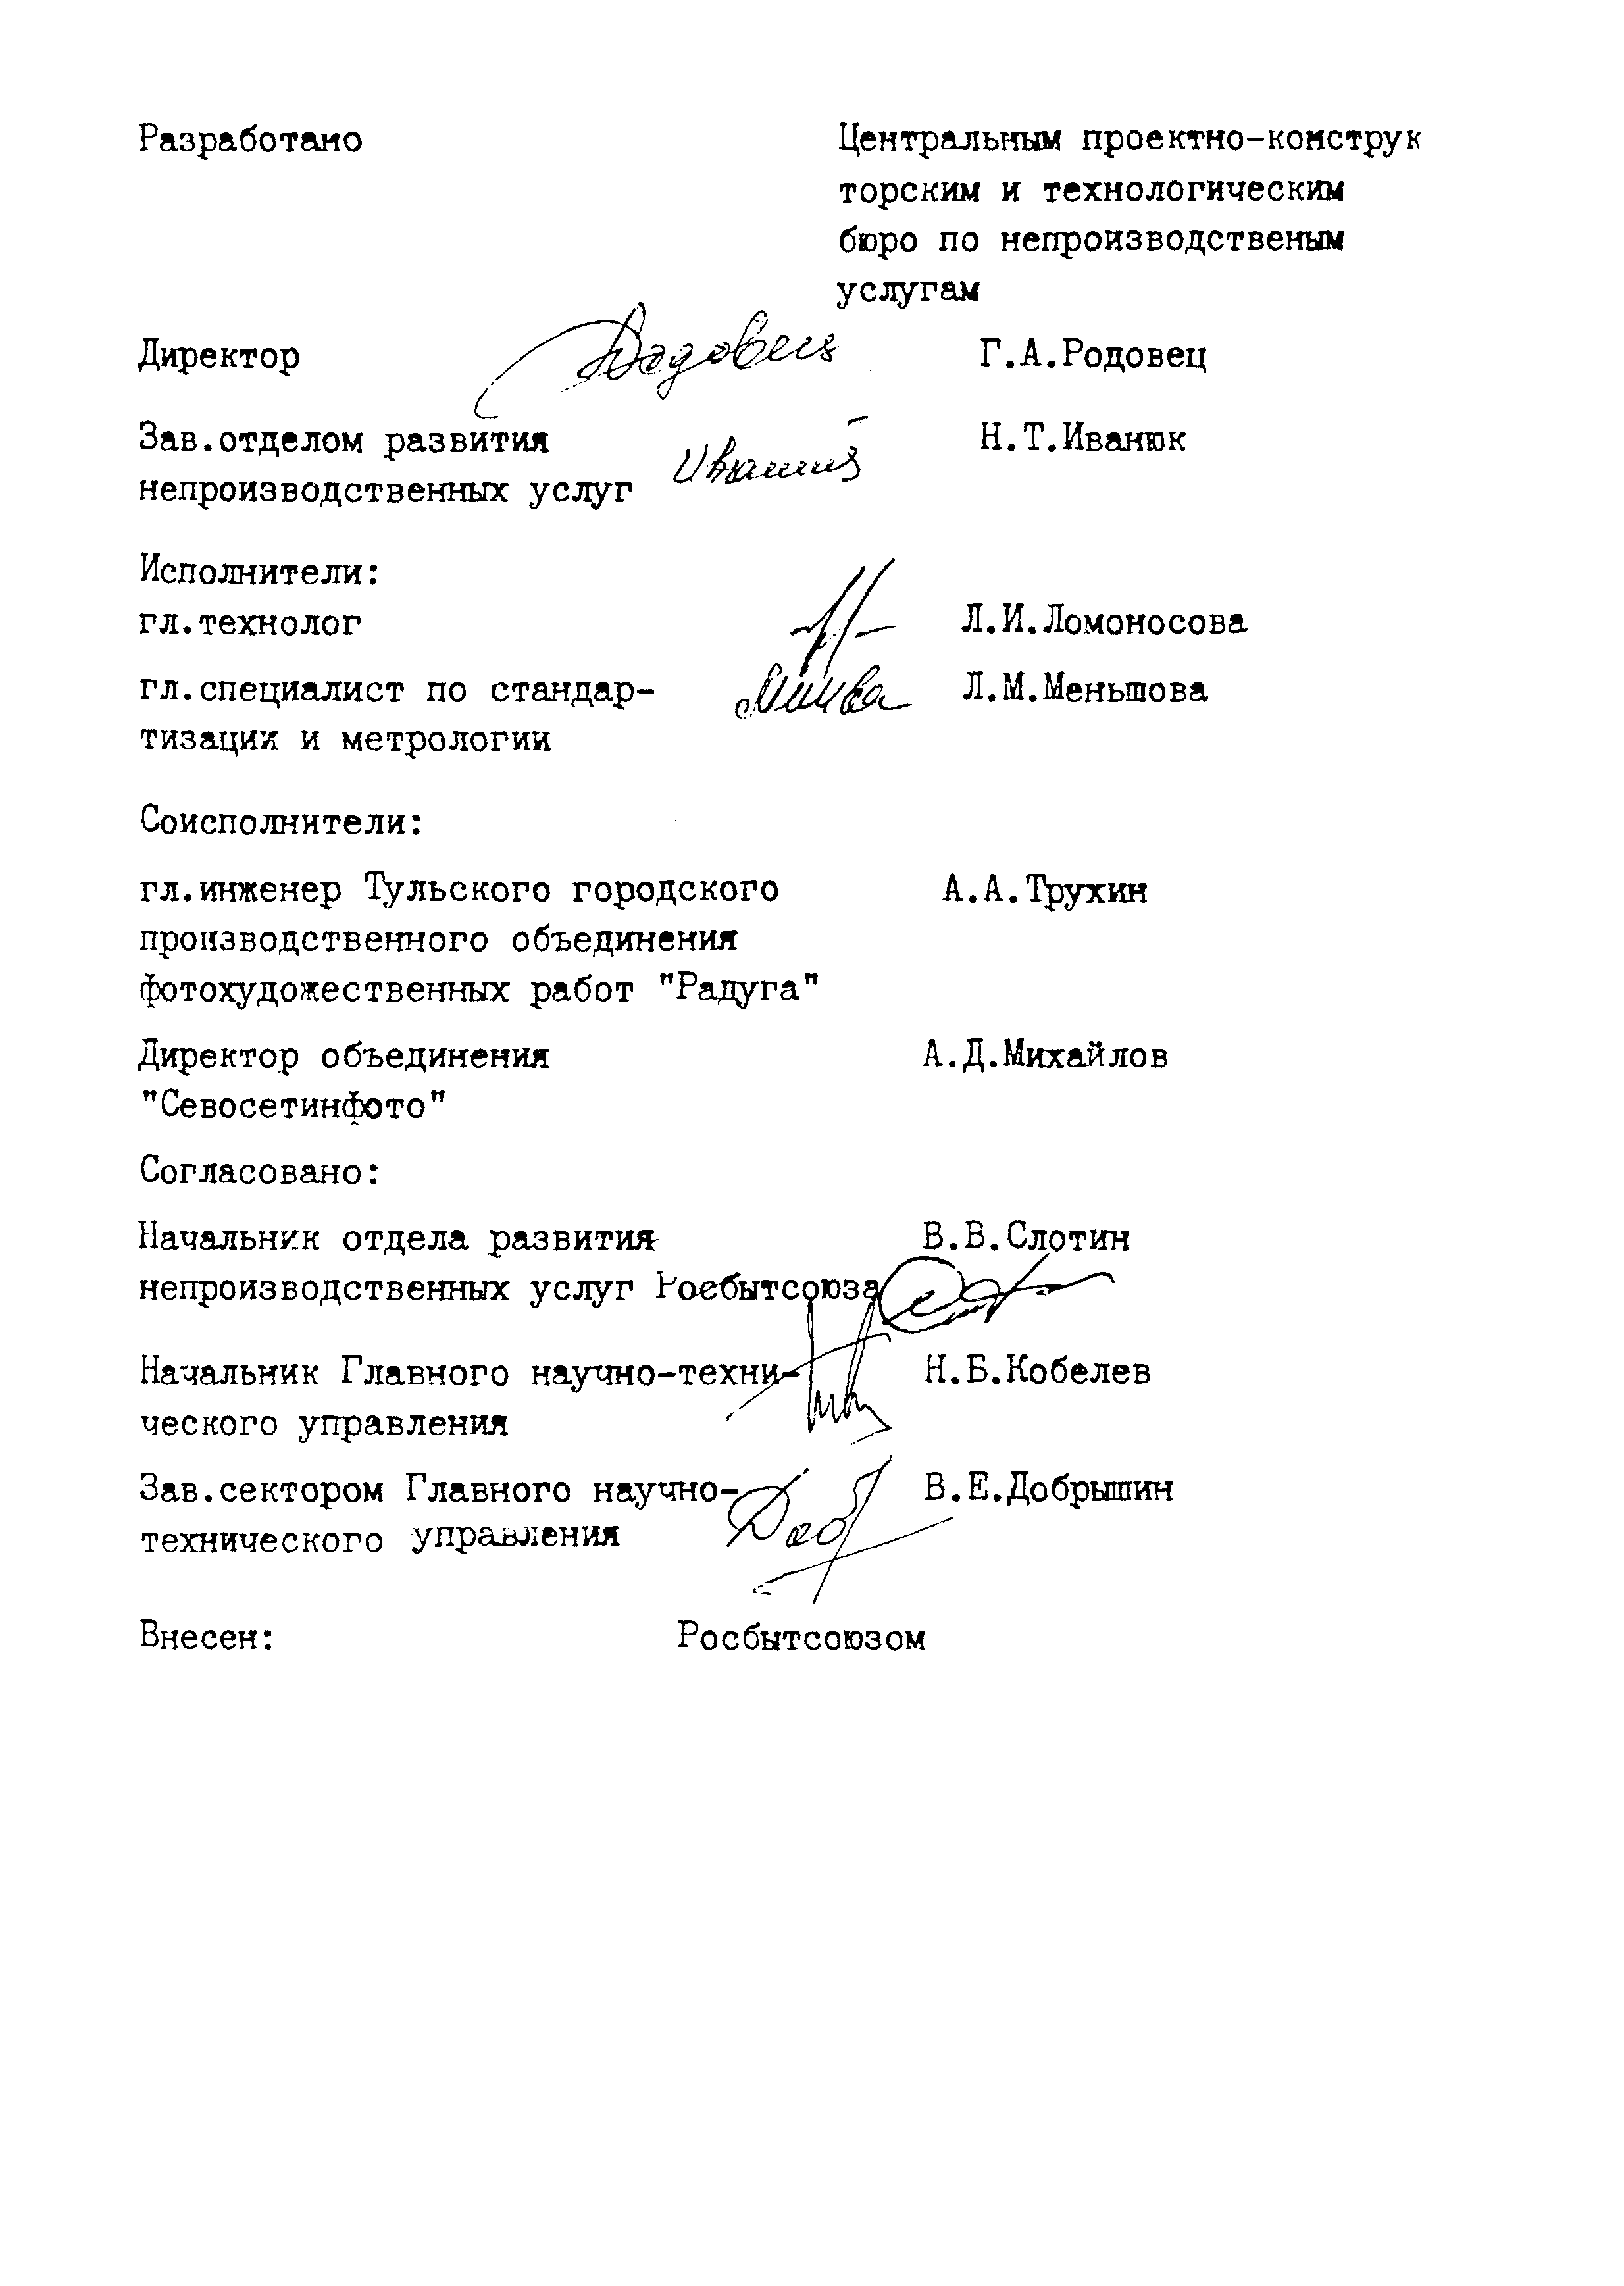 РСТ РСФСР 791-91